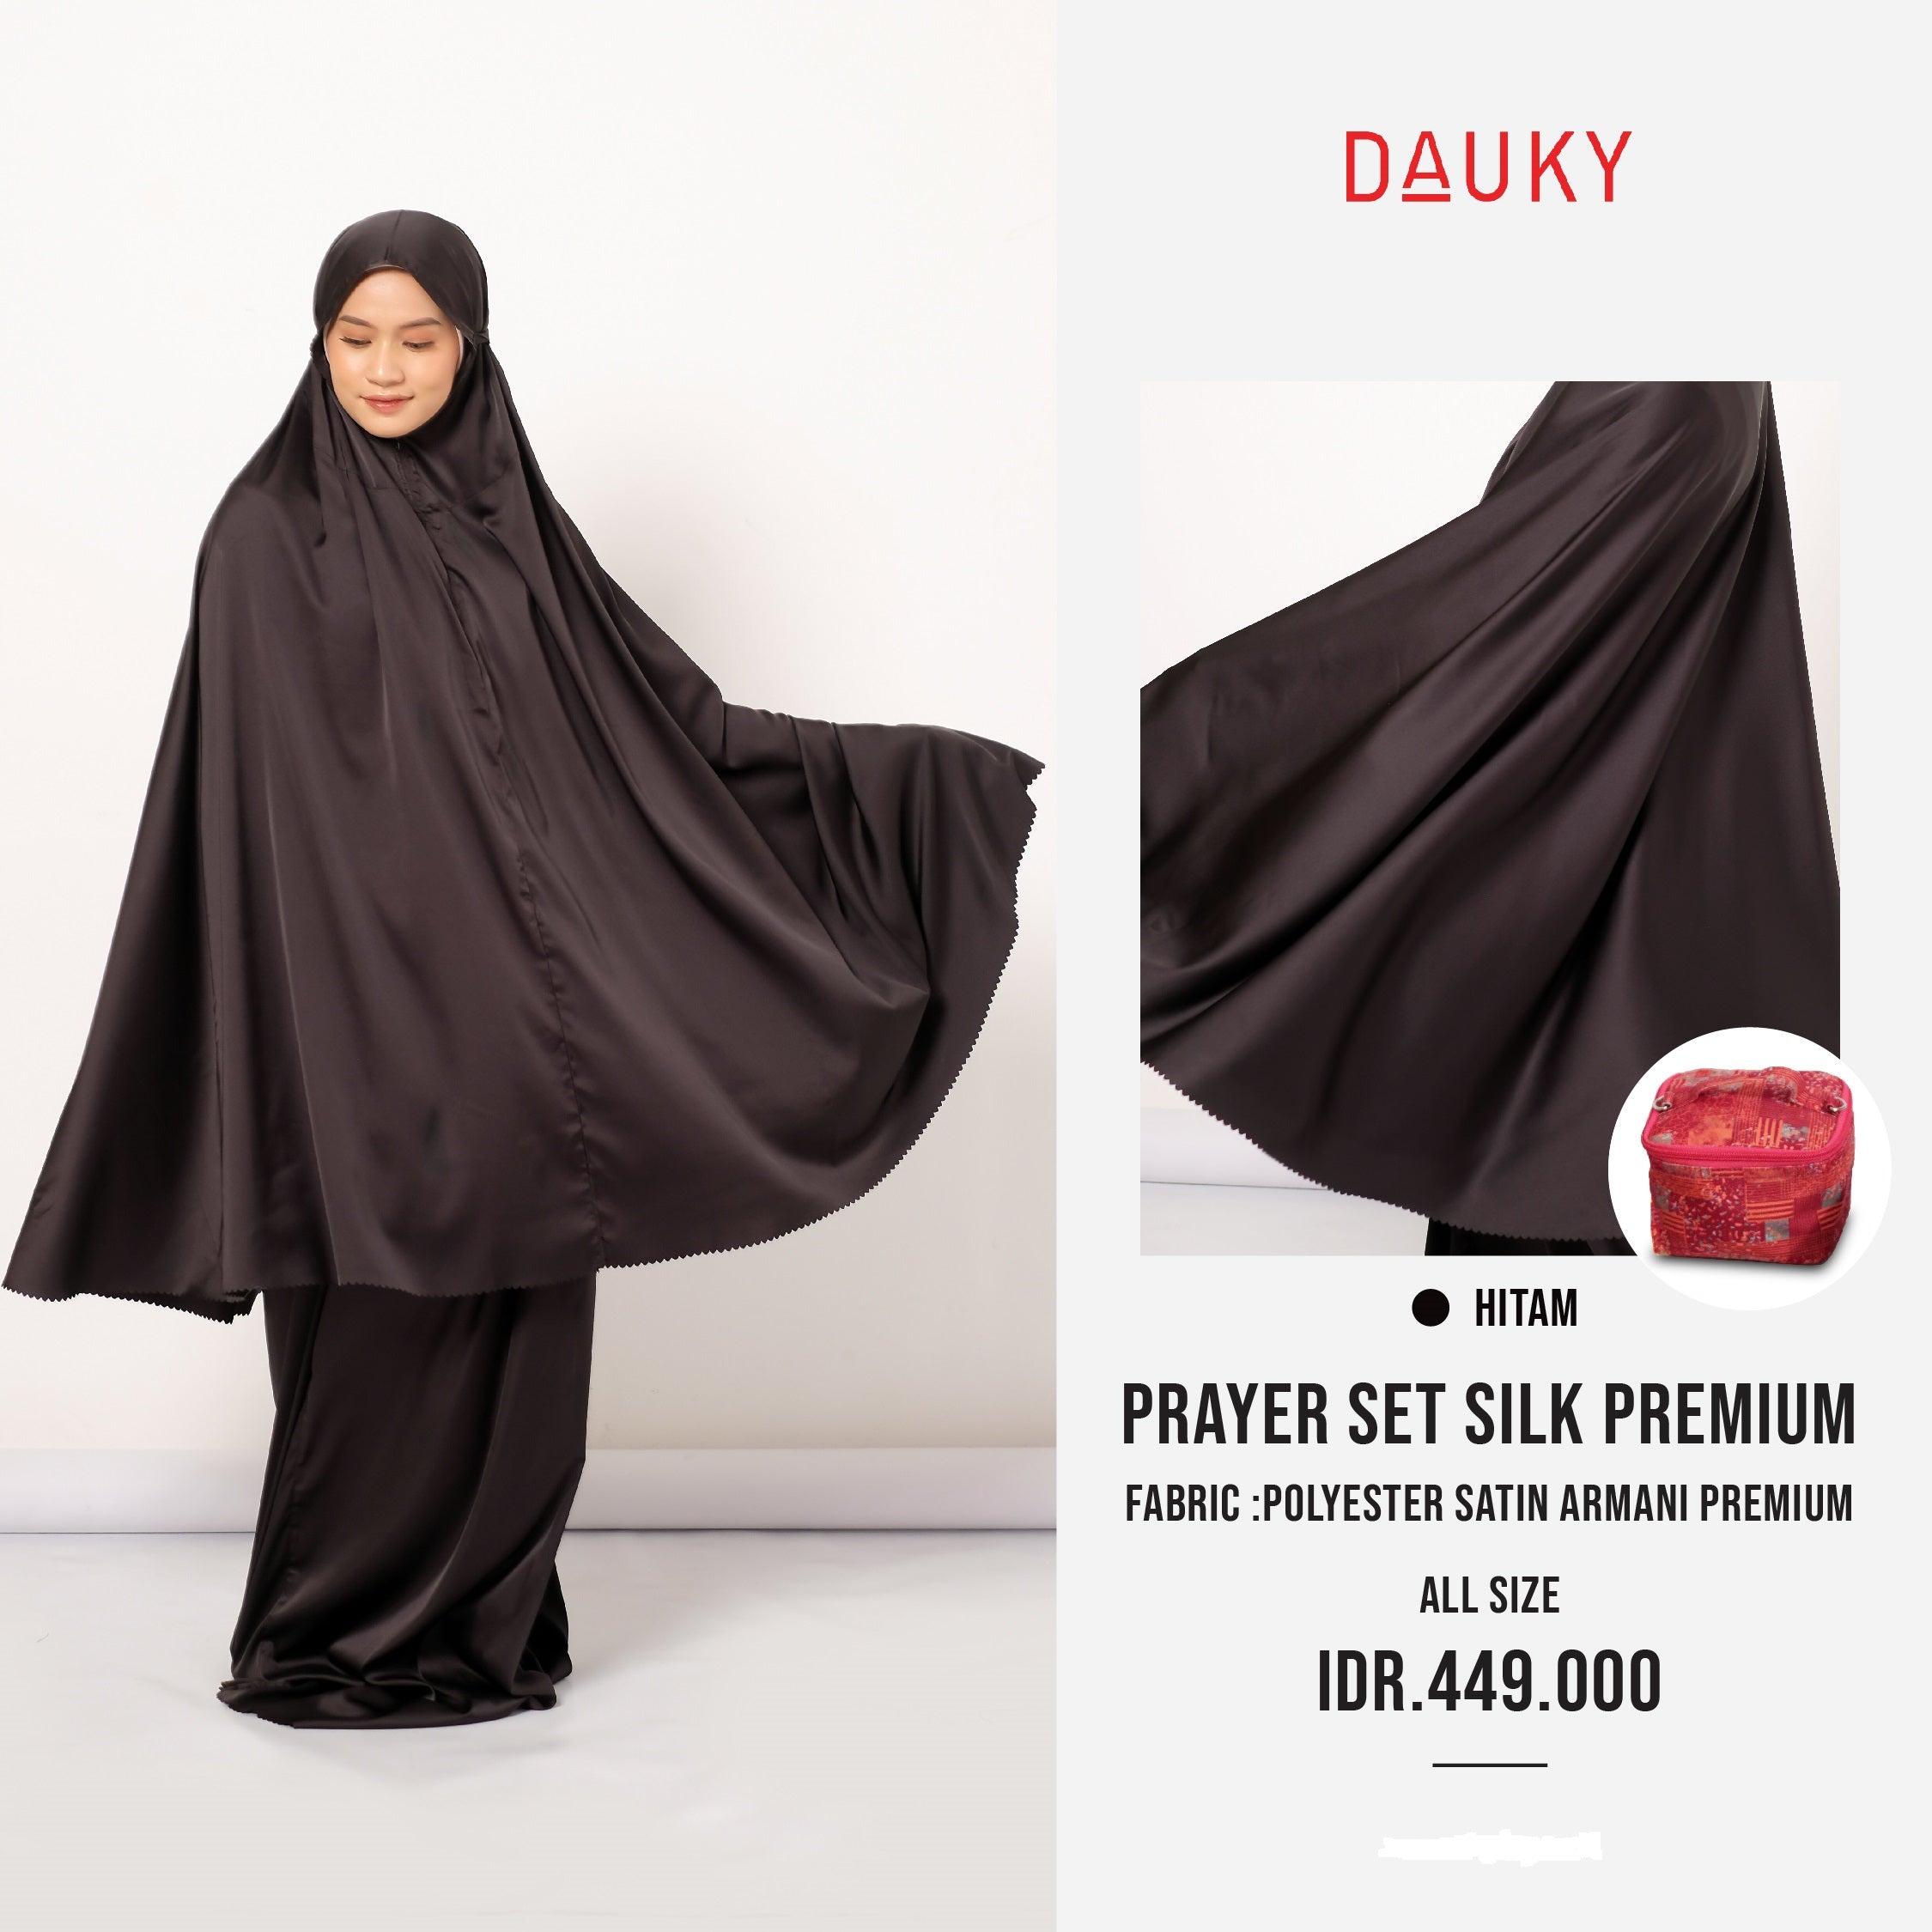 Dauky Mukena Prayer Set Silk Premium - Hitam